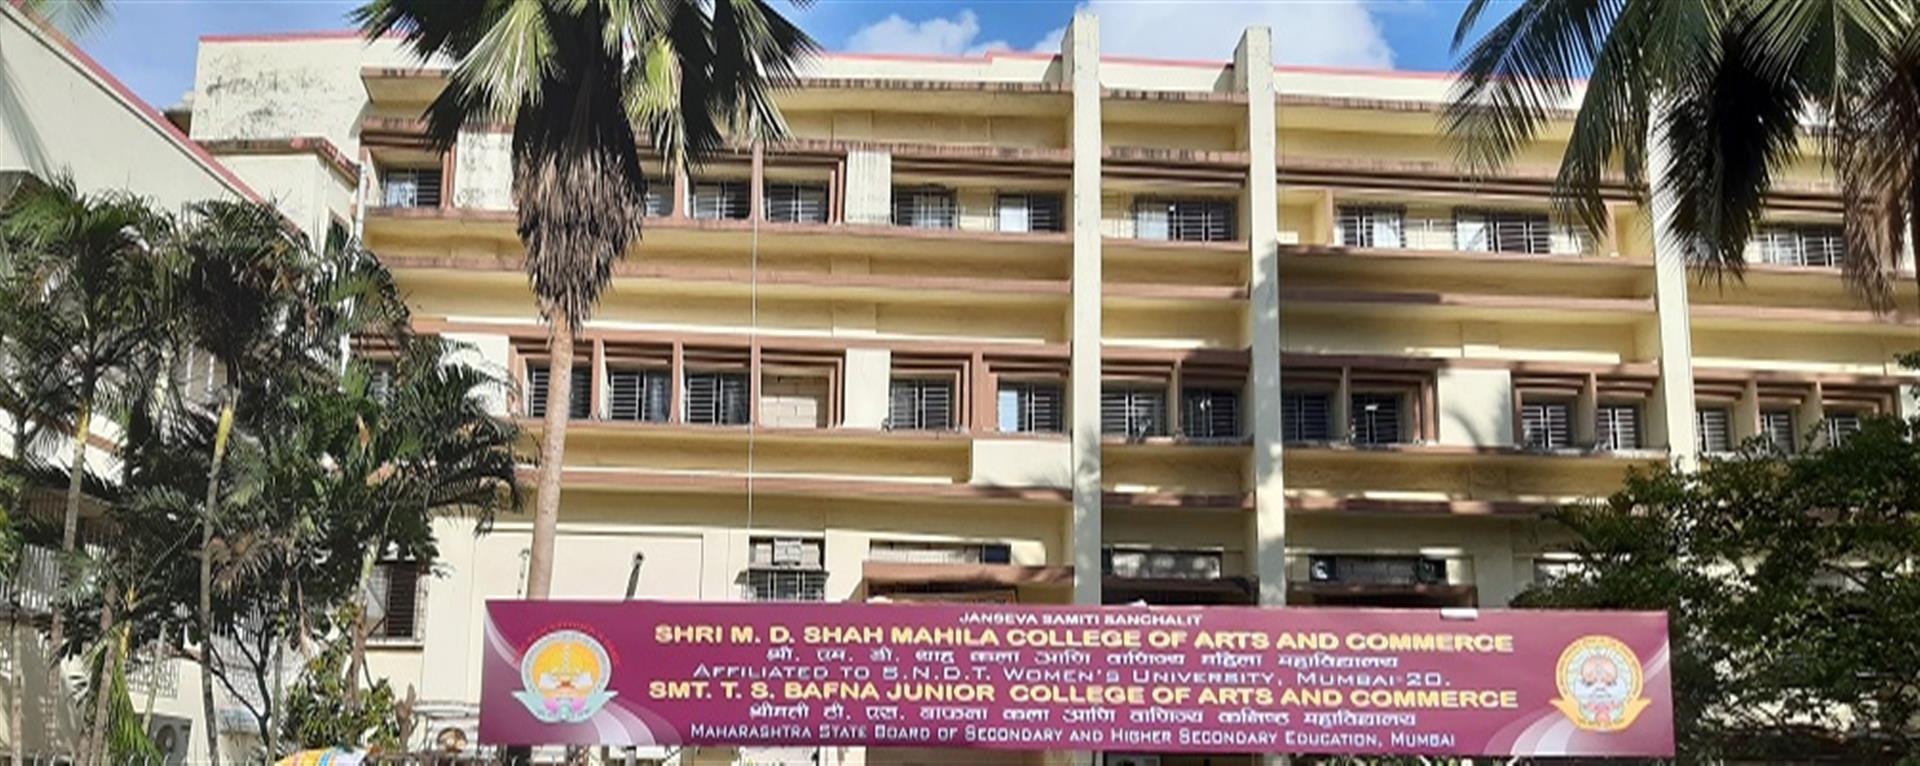 श्री. एम. डी. शाह महिला कॉलेज में आयोजित होंगे विभिन्न कार्यक्रम | SHRI.M.D.SHAH MAHILA COLLEGE